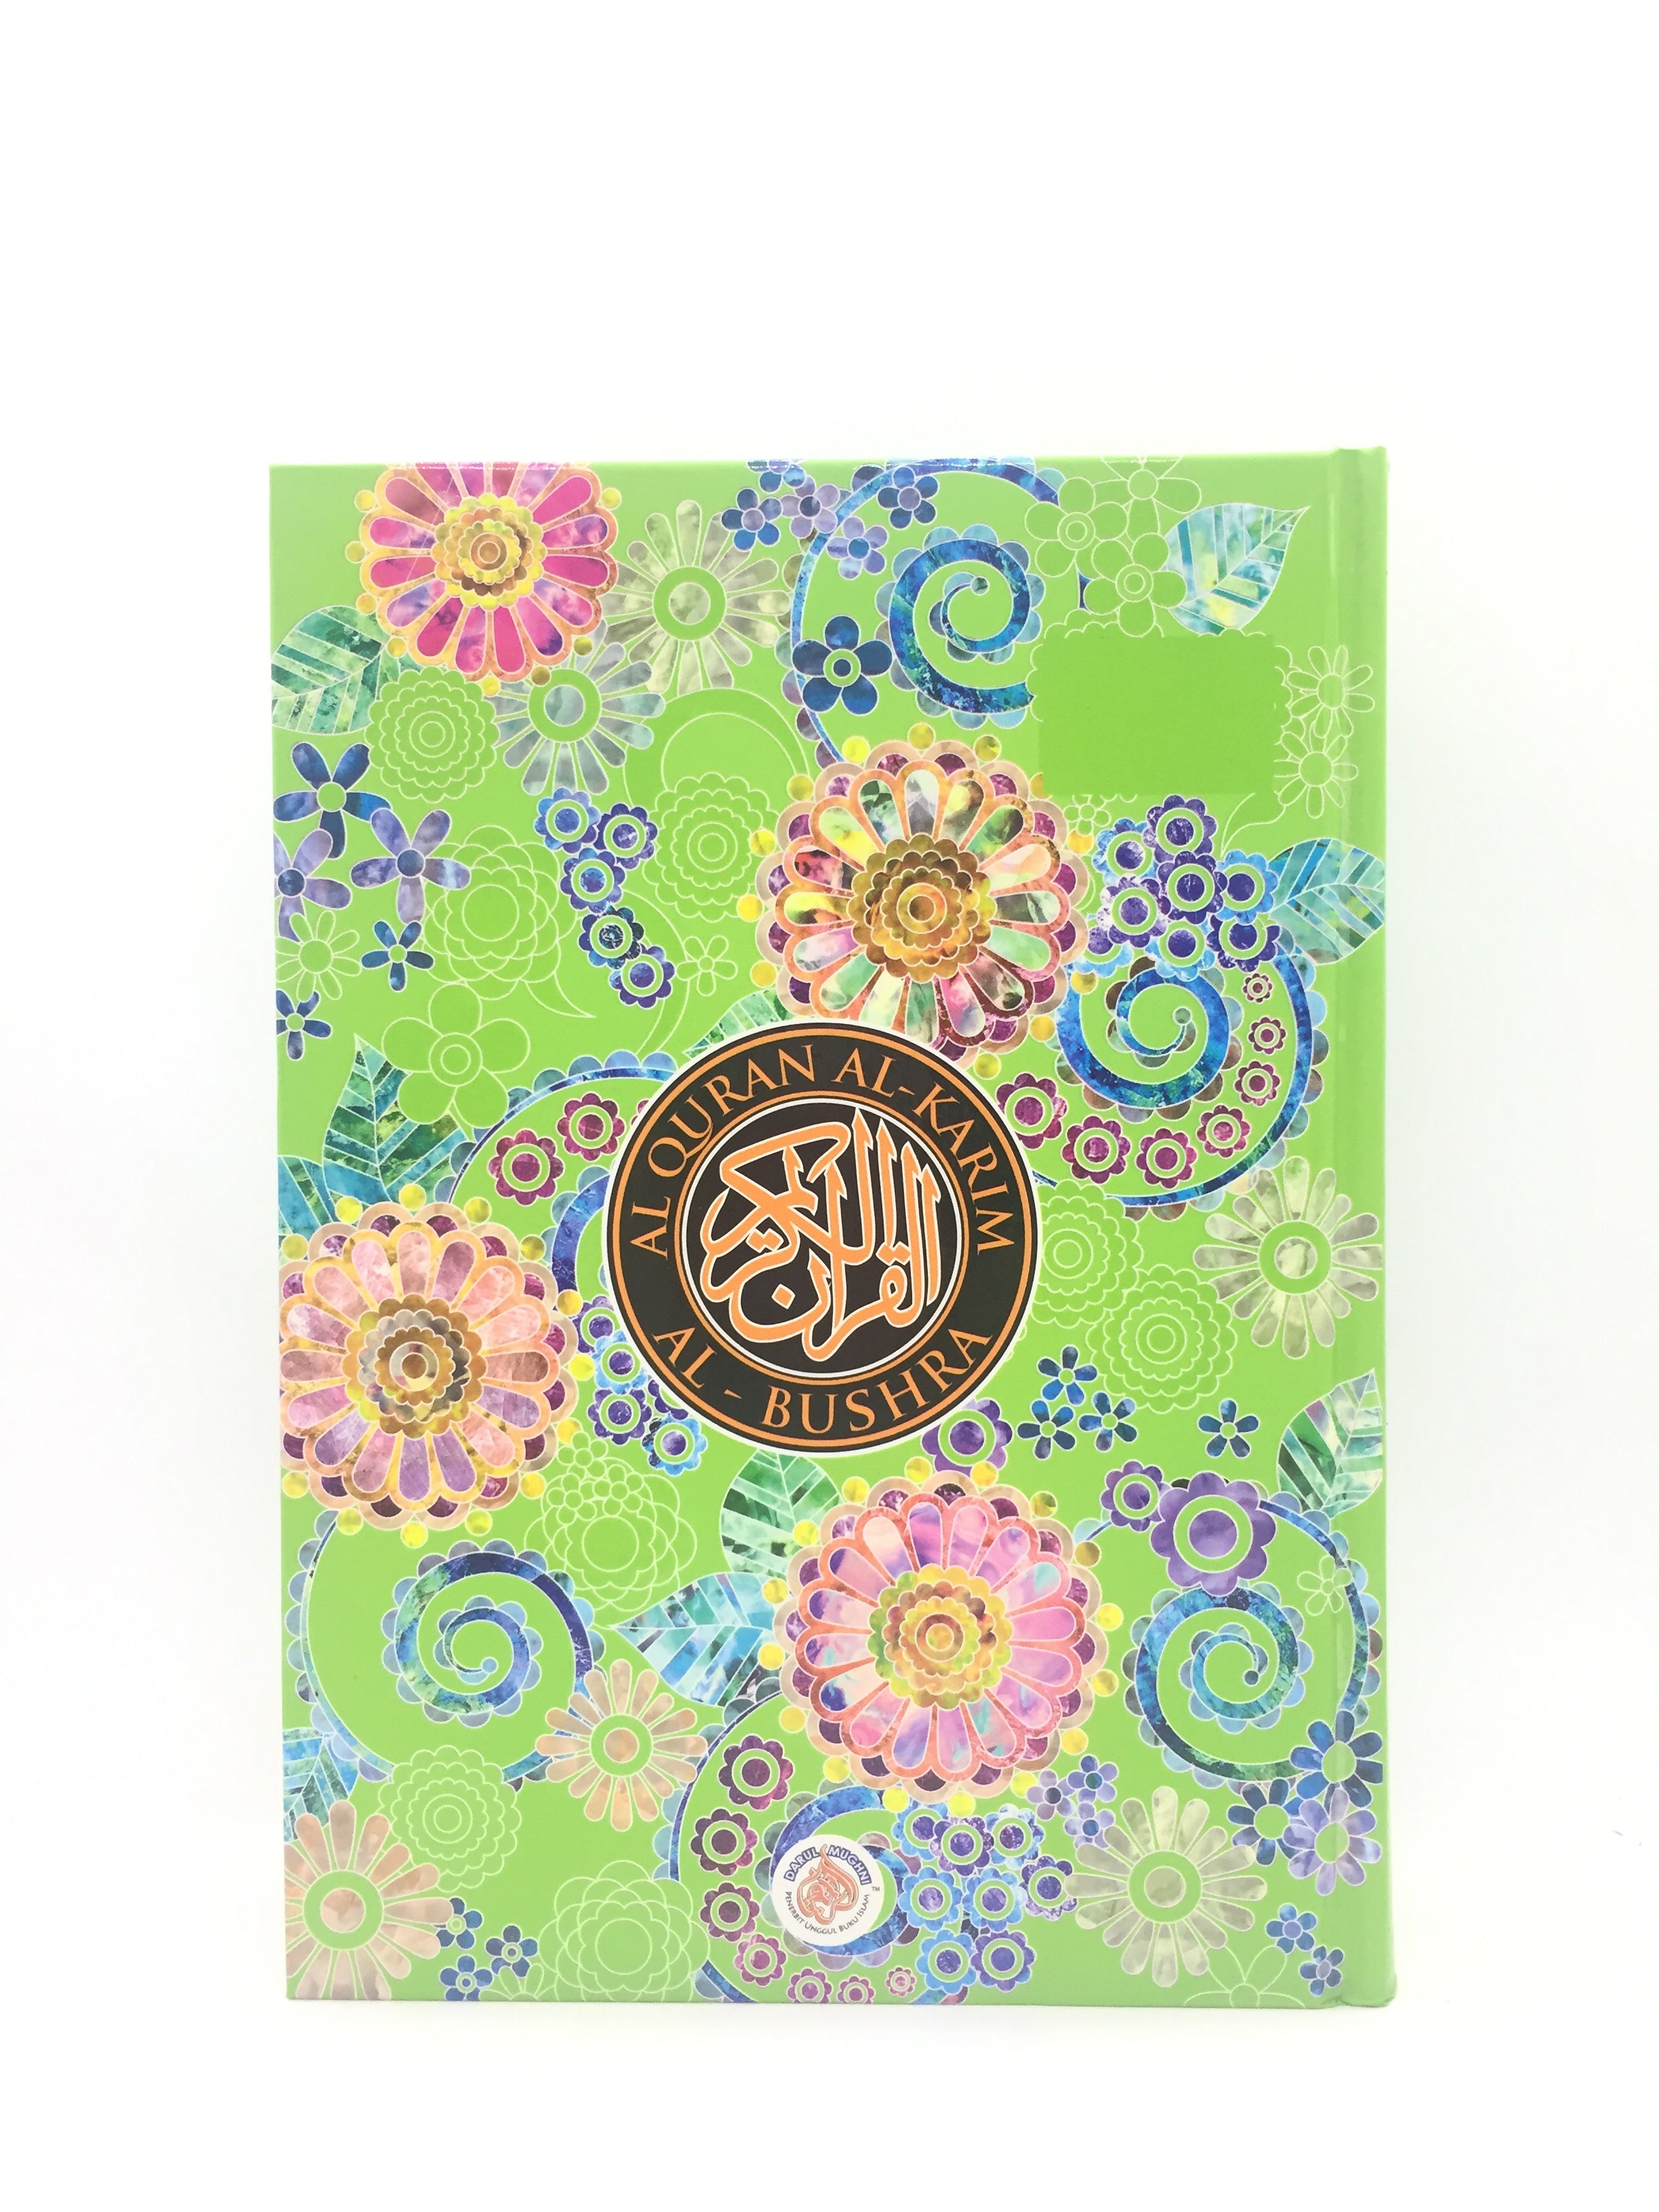 Al-Quran Al-Bushra: Rainbow Pages (A5)